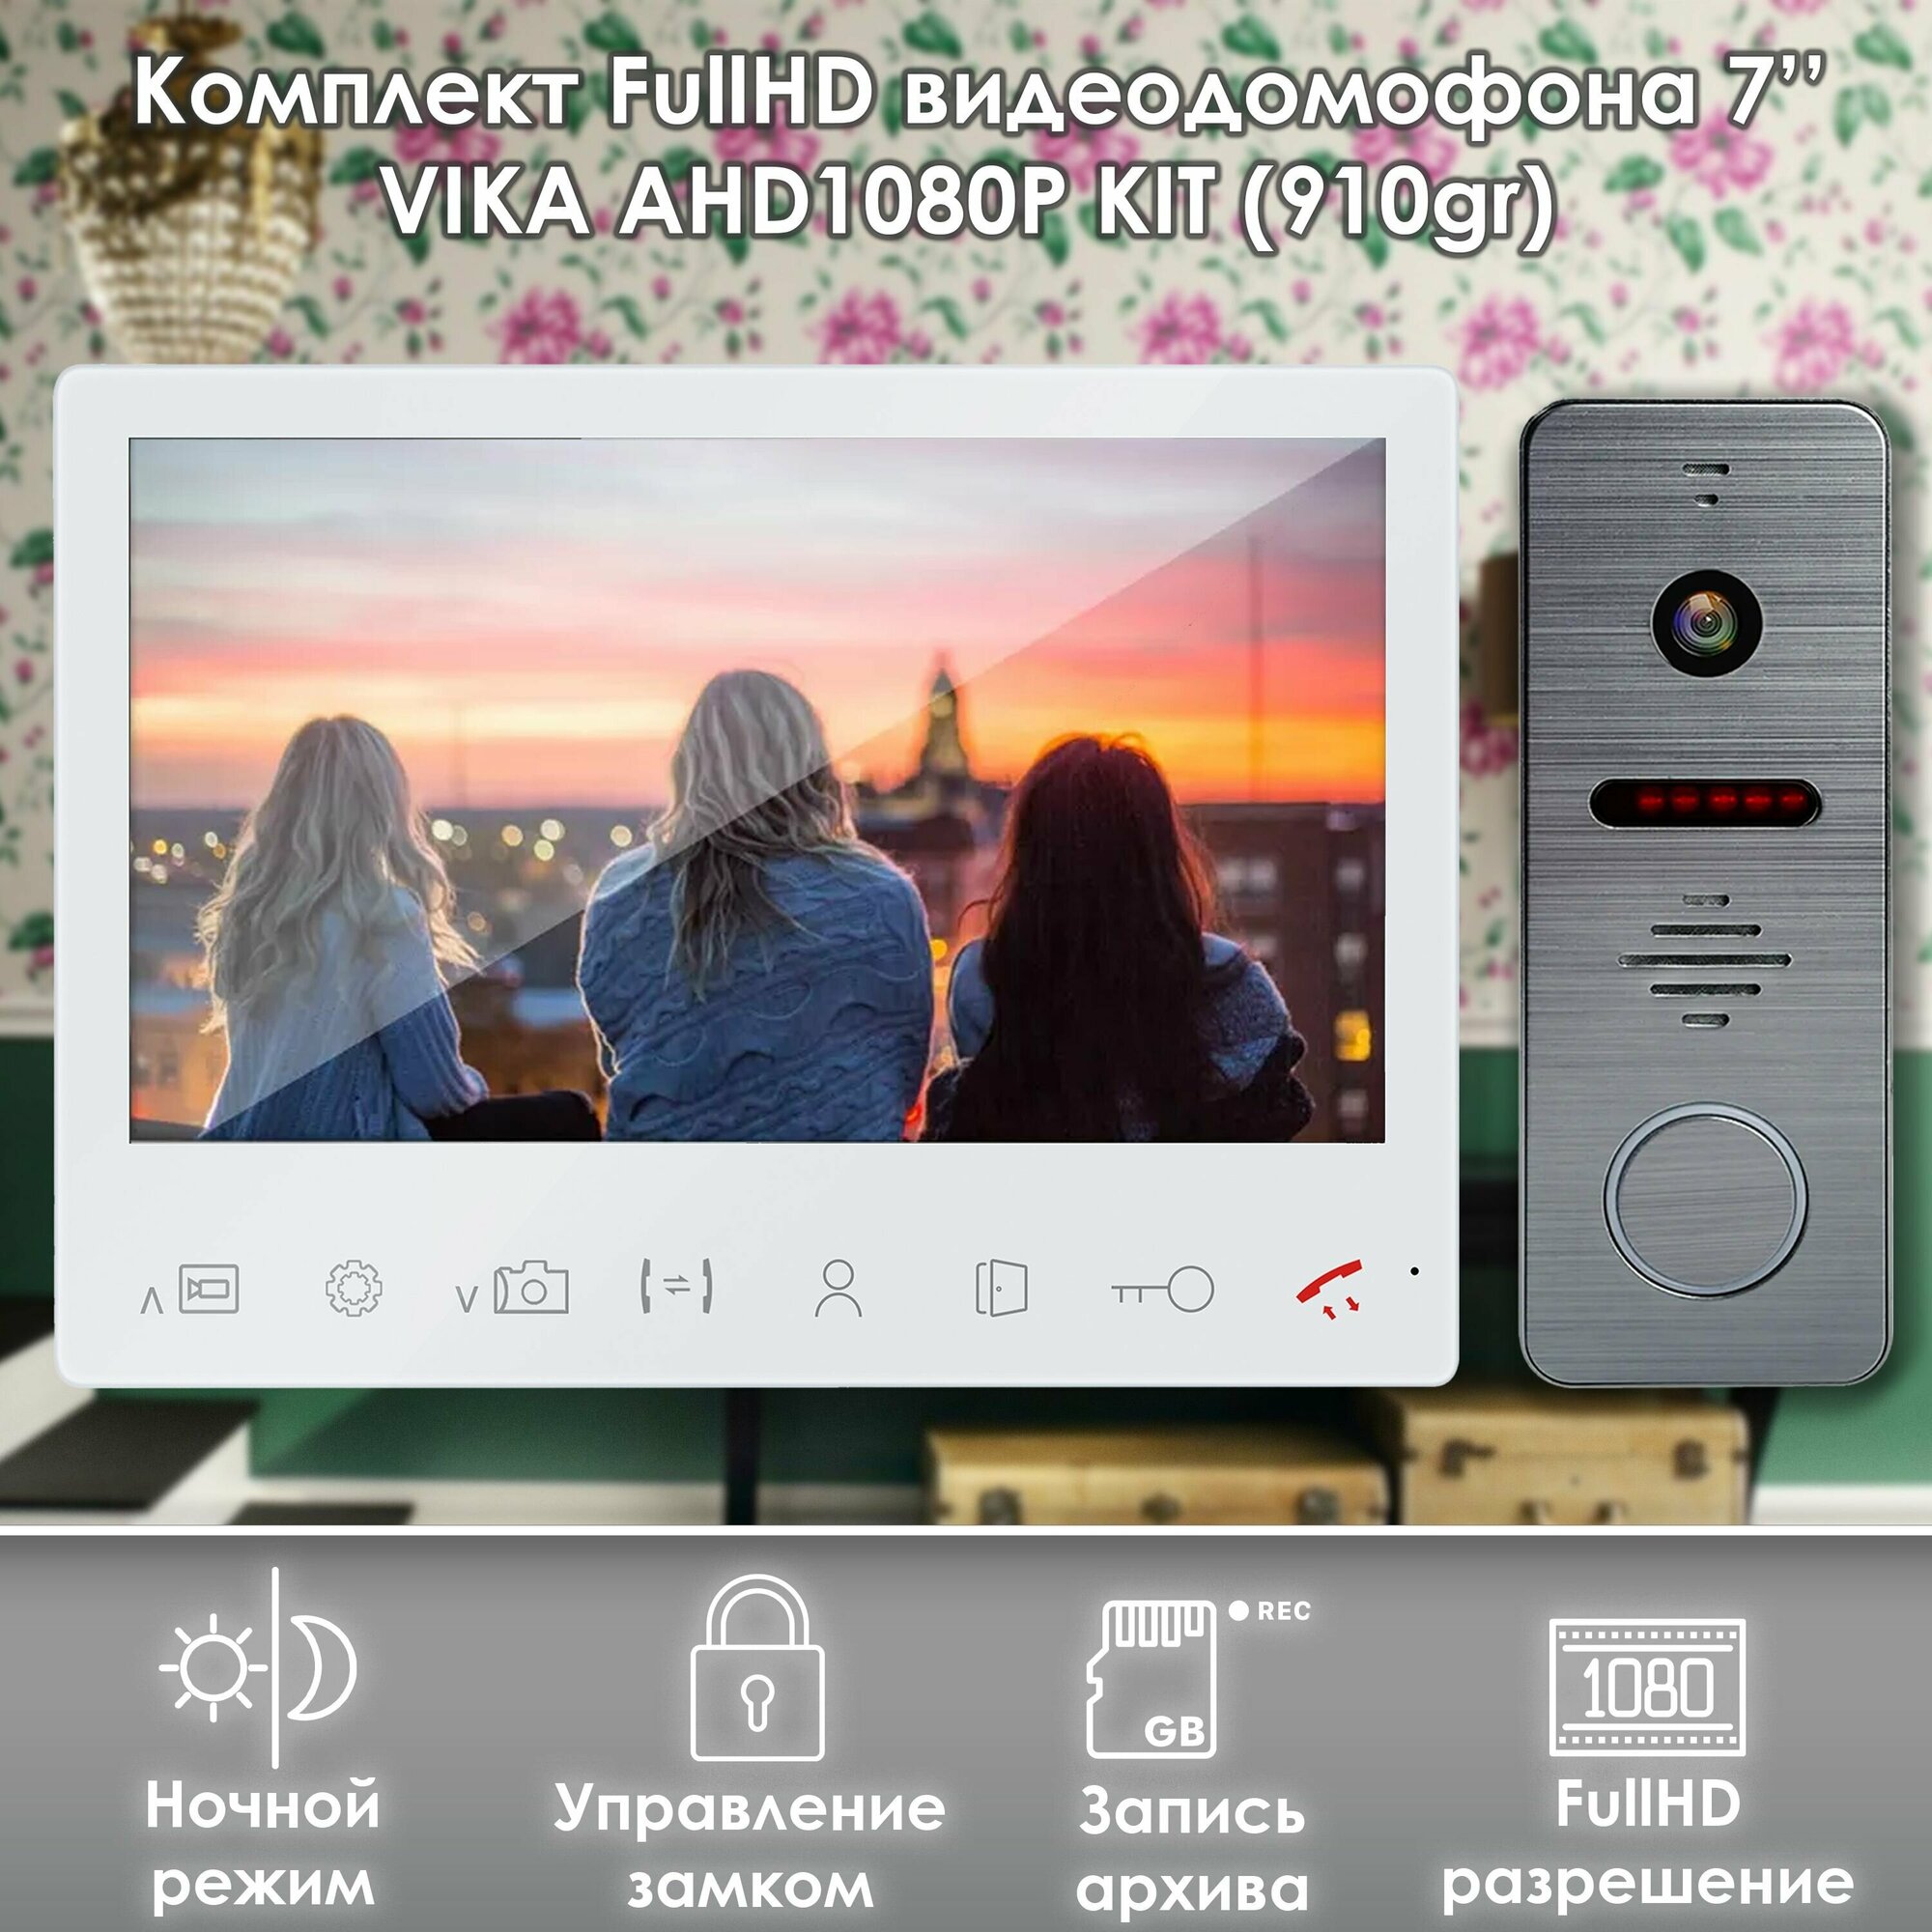 Комплект видеодомофона Vika-KIT+вызывная панель(910gr) Full HD. Экран 7". Запись звонков и движения на SD-карту. Совместим с подъездным домофоном через модуль сопряжения.